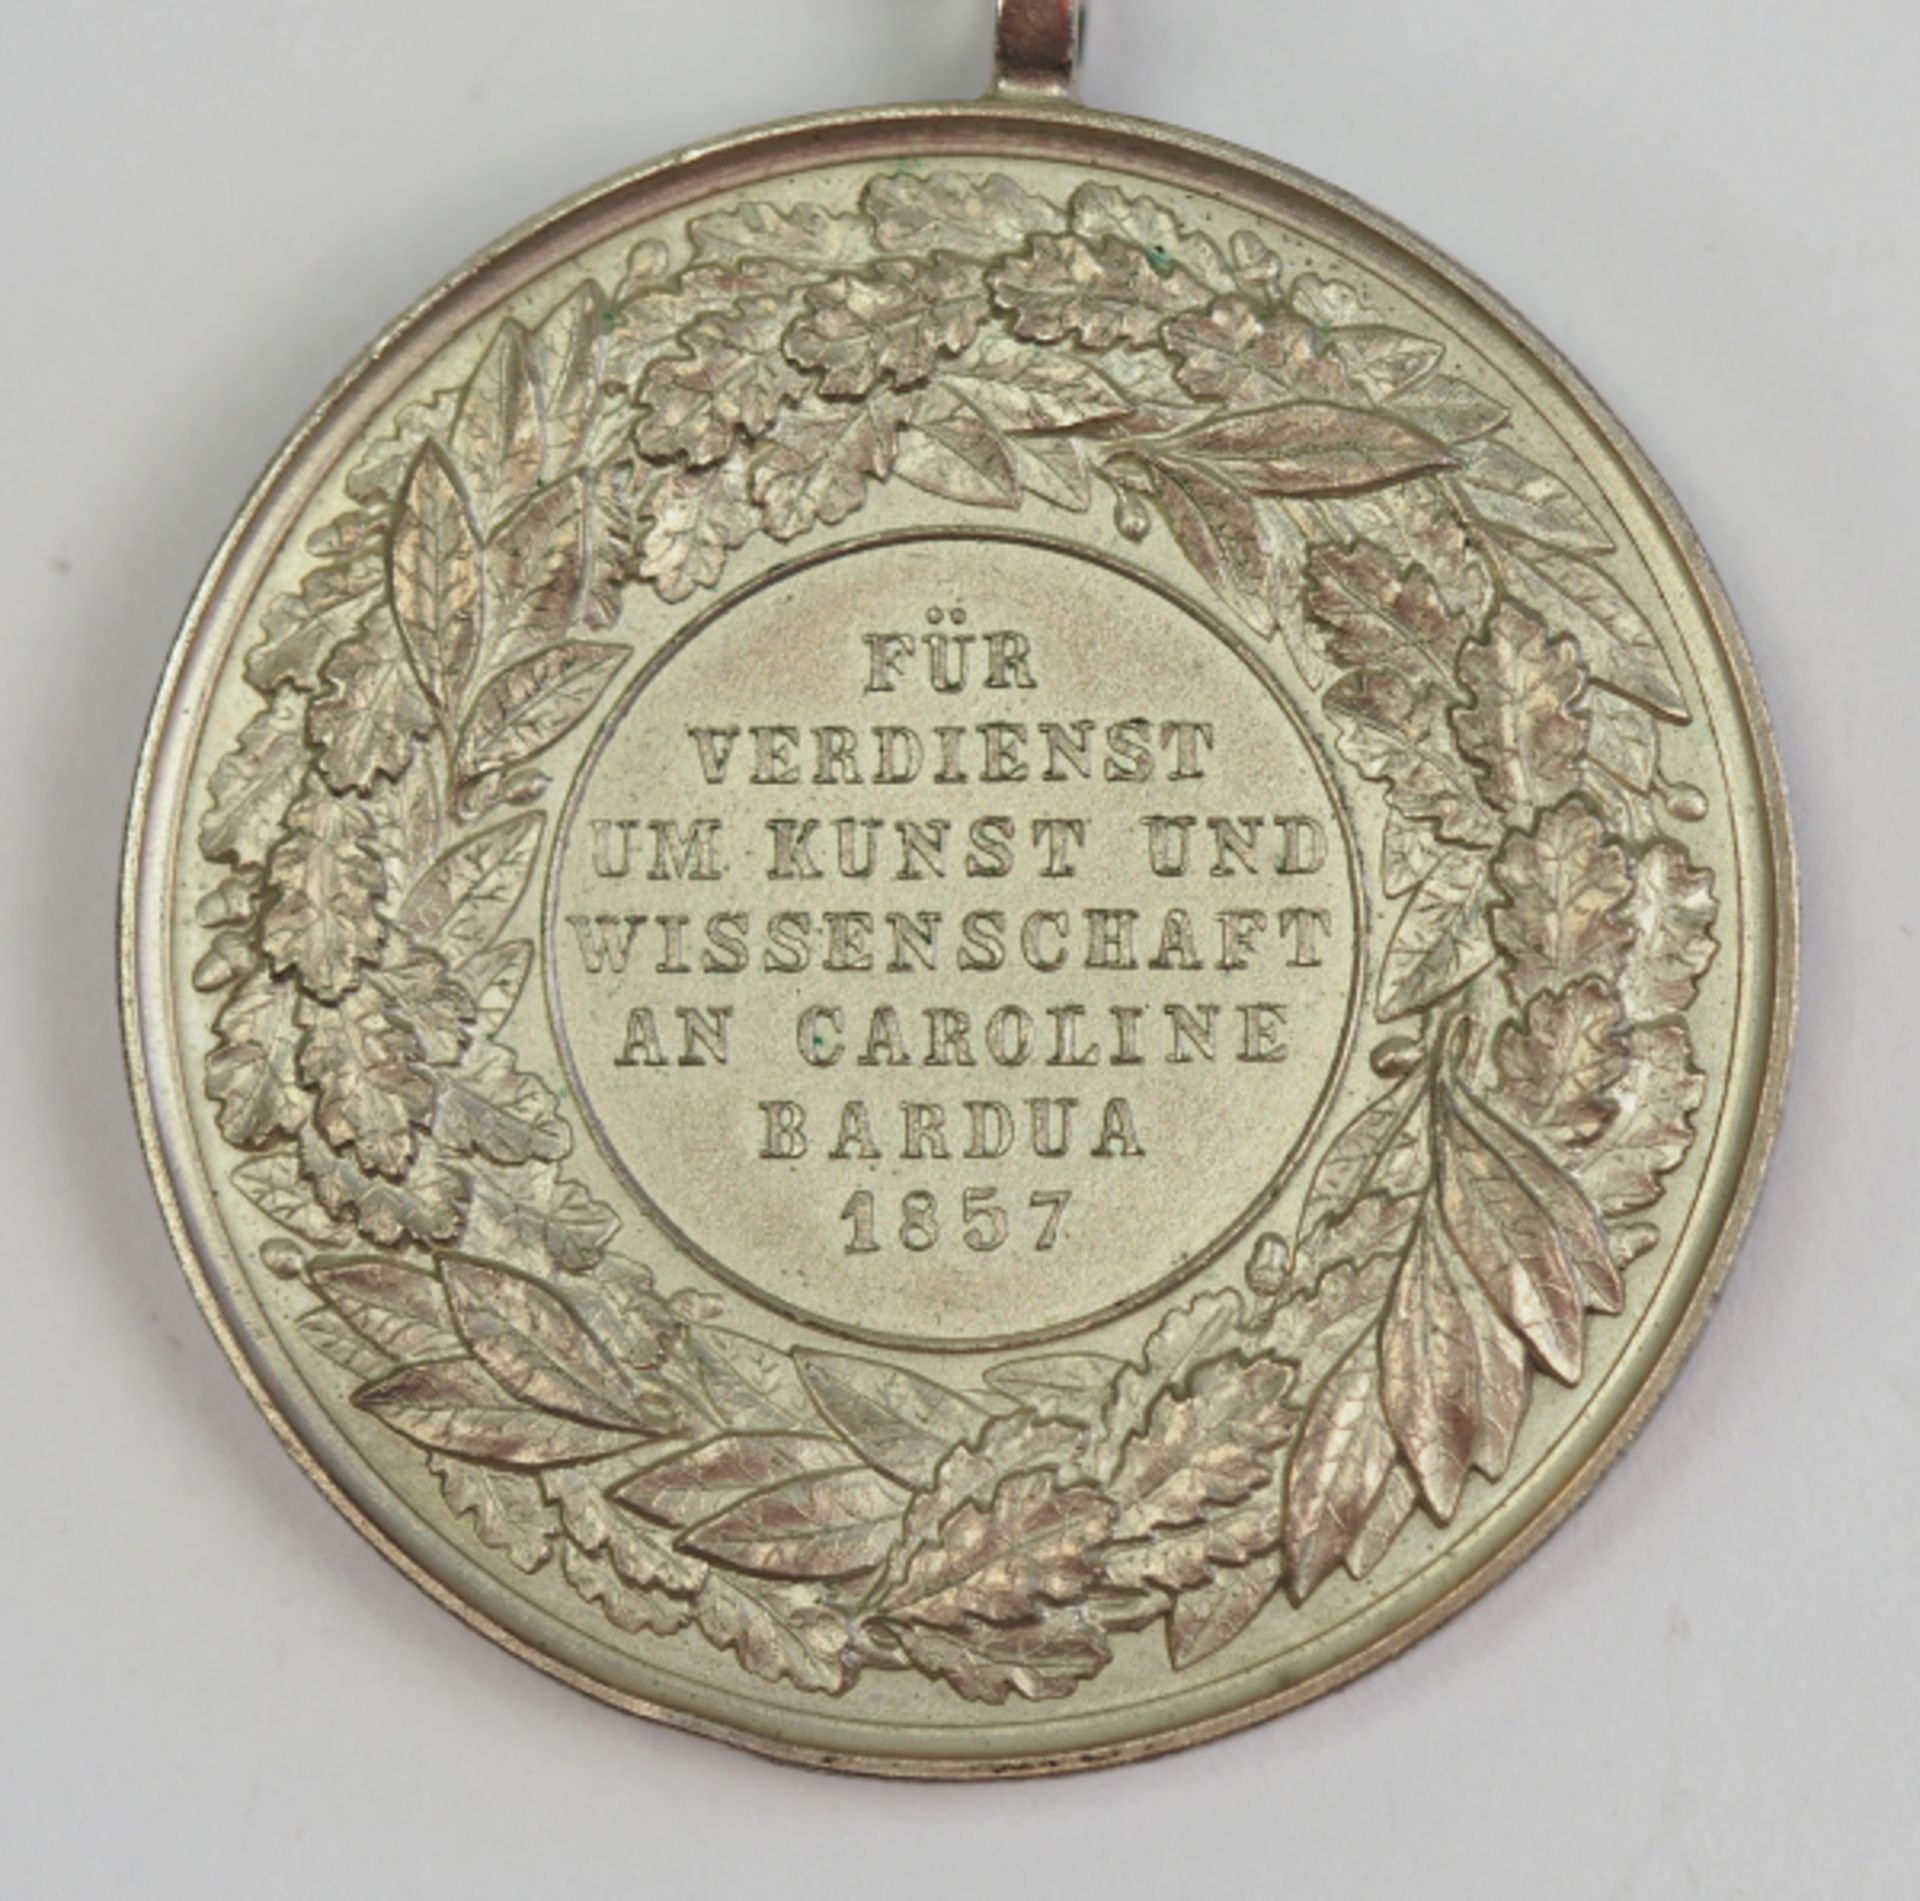 Anhalt: Medaille für Verdienste um Kunst und Wissenschaft - Caroline Bardua 1857.Versilberter und - Bild 4 aus 4